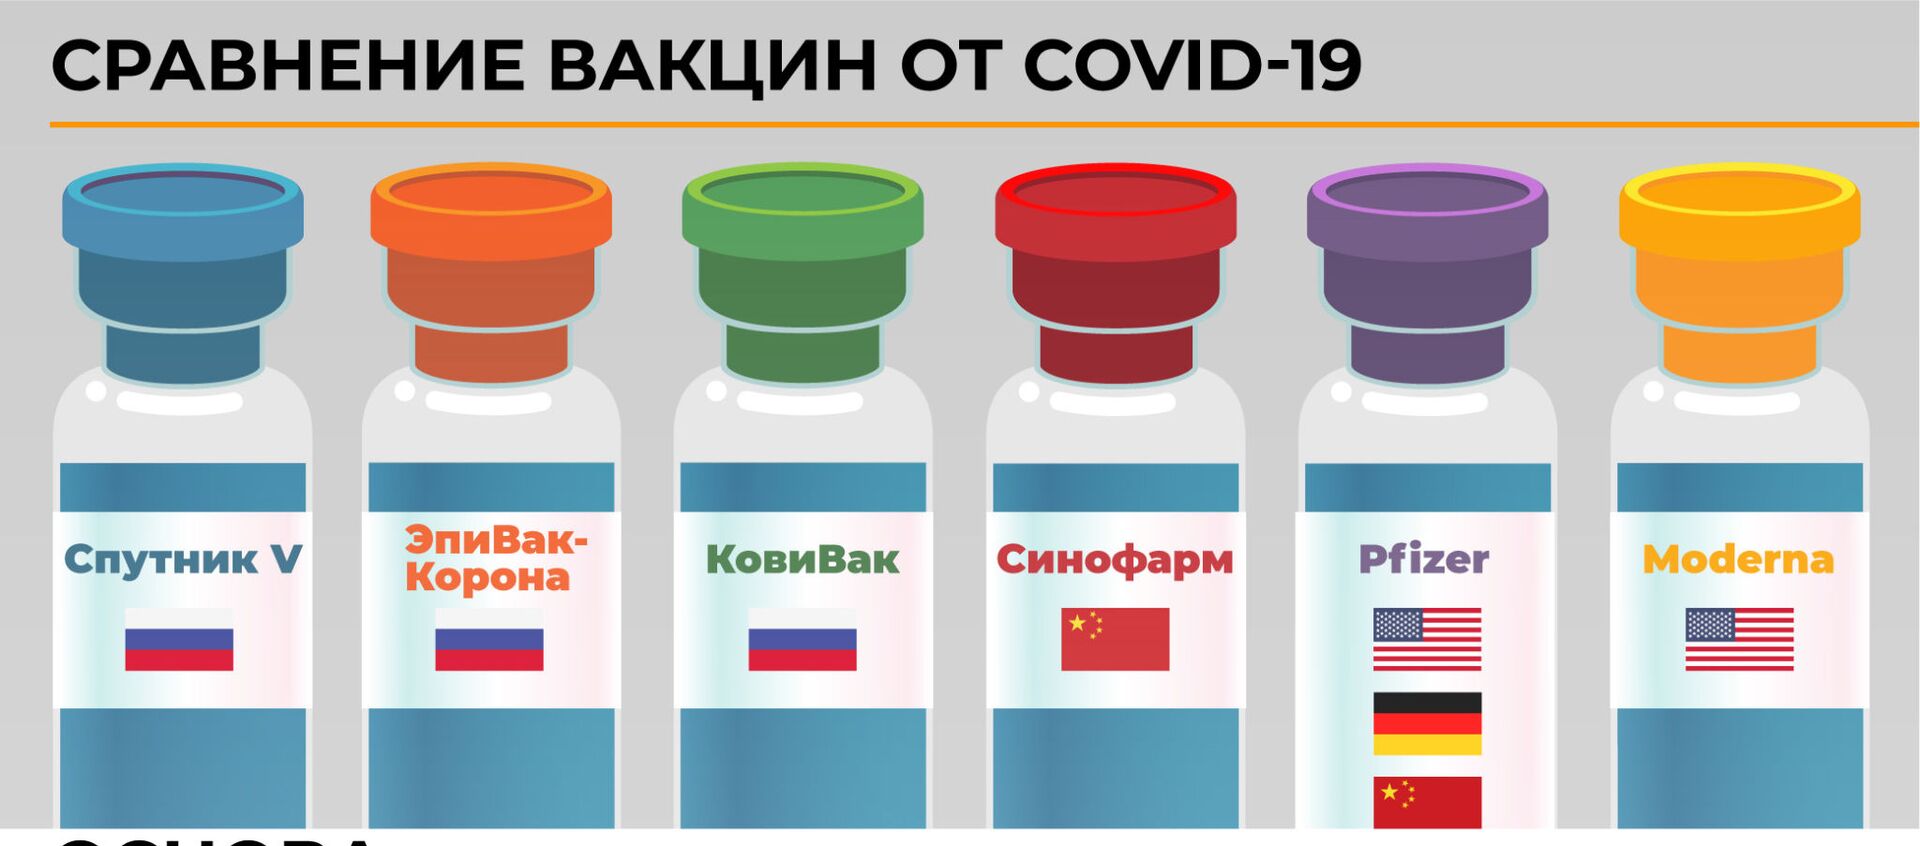 Сравнение вакцин от COVID-19 - Sputnik Латвия, 1920, 20.02.2021